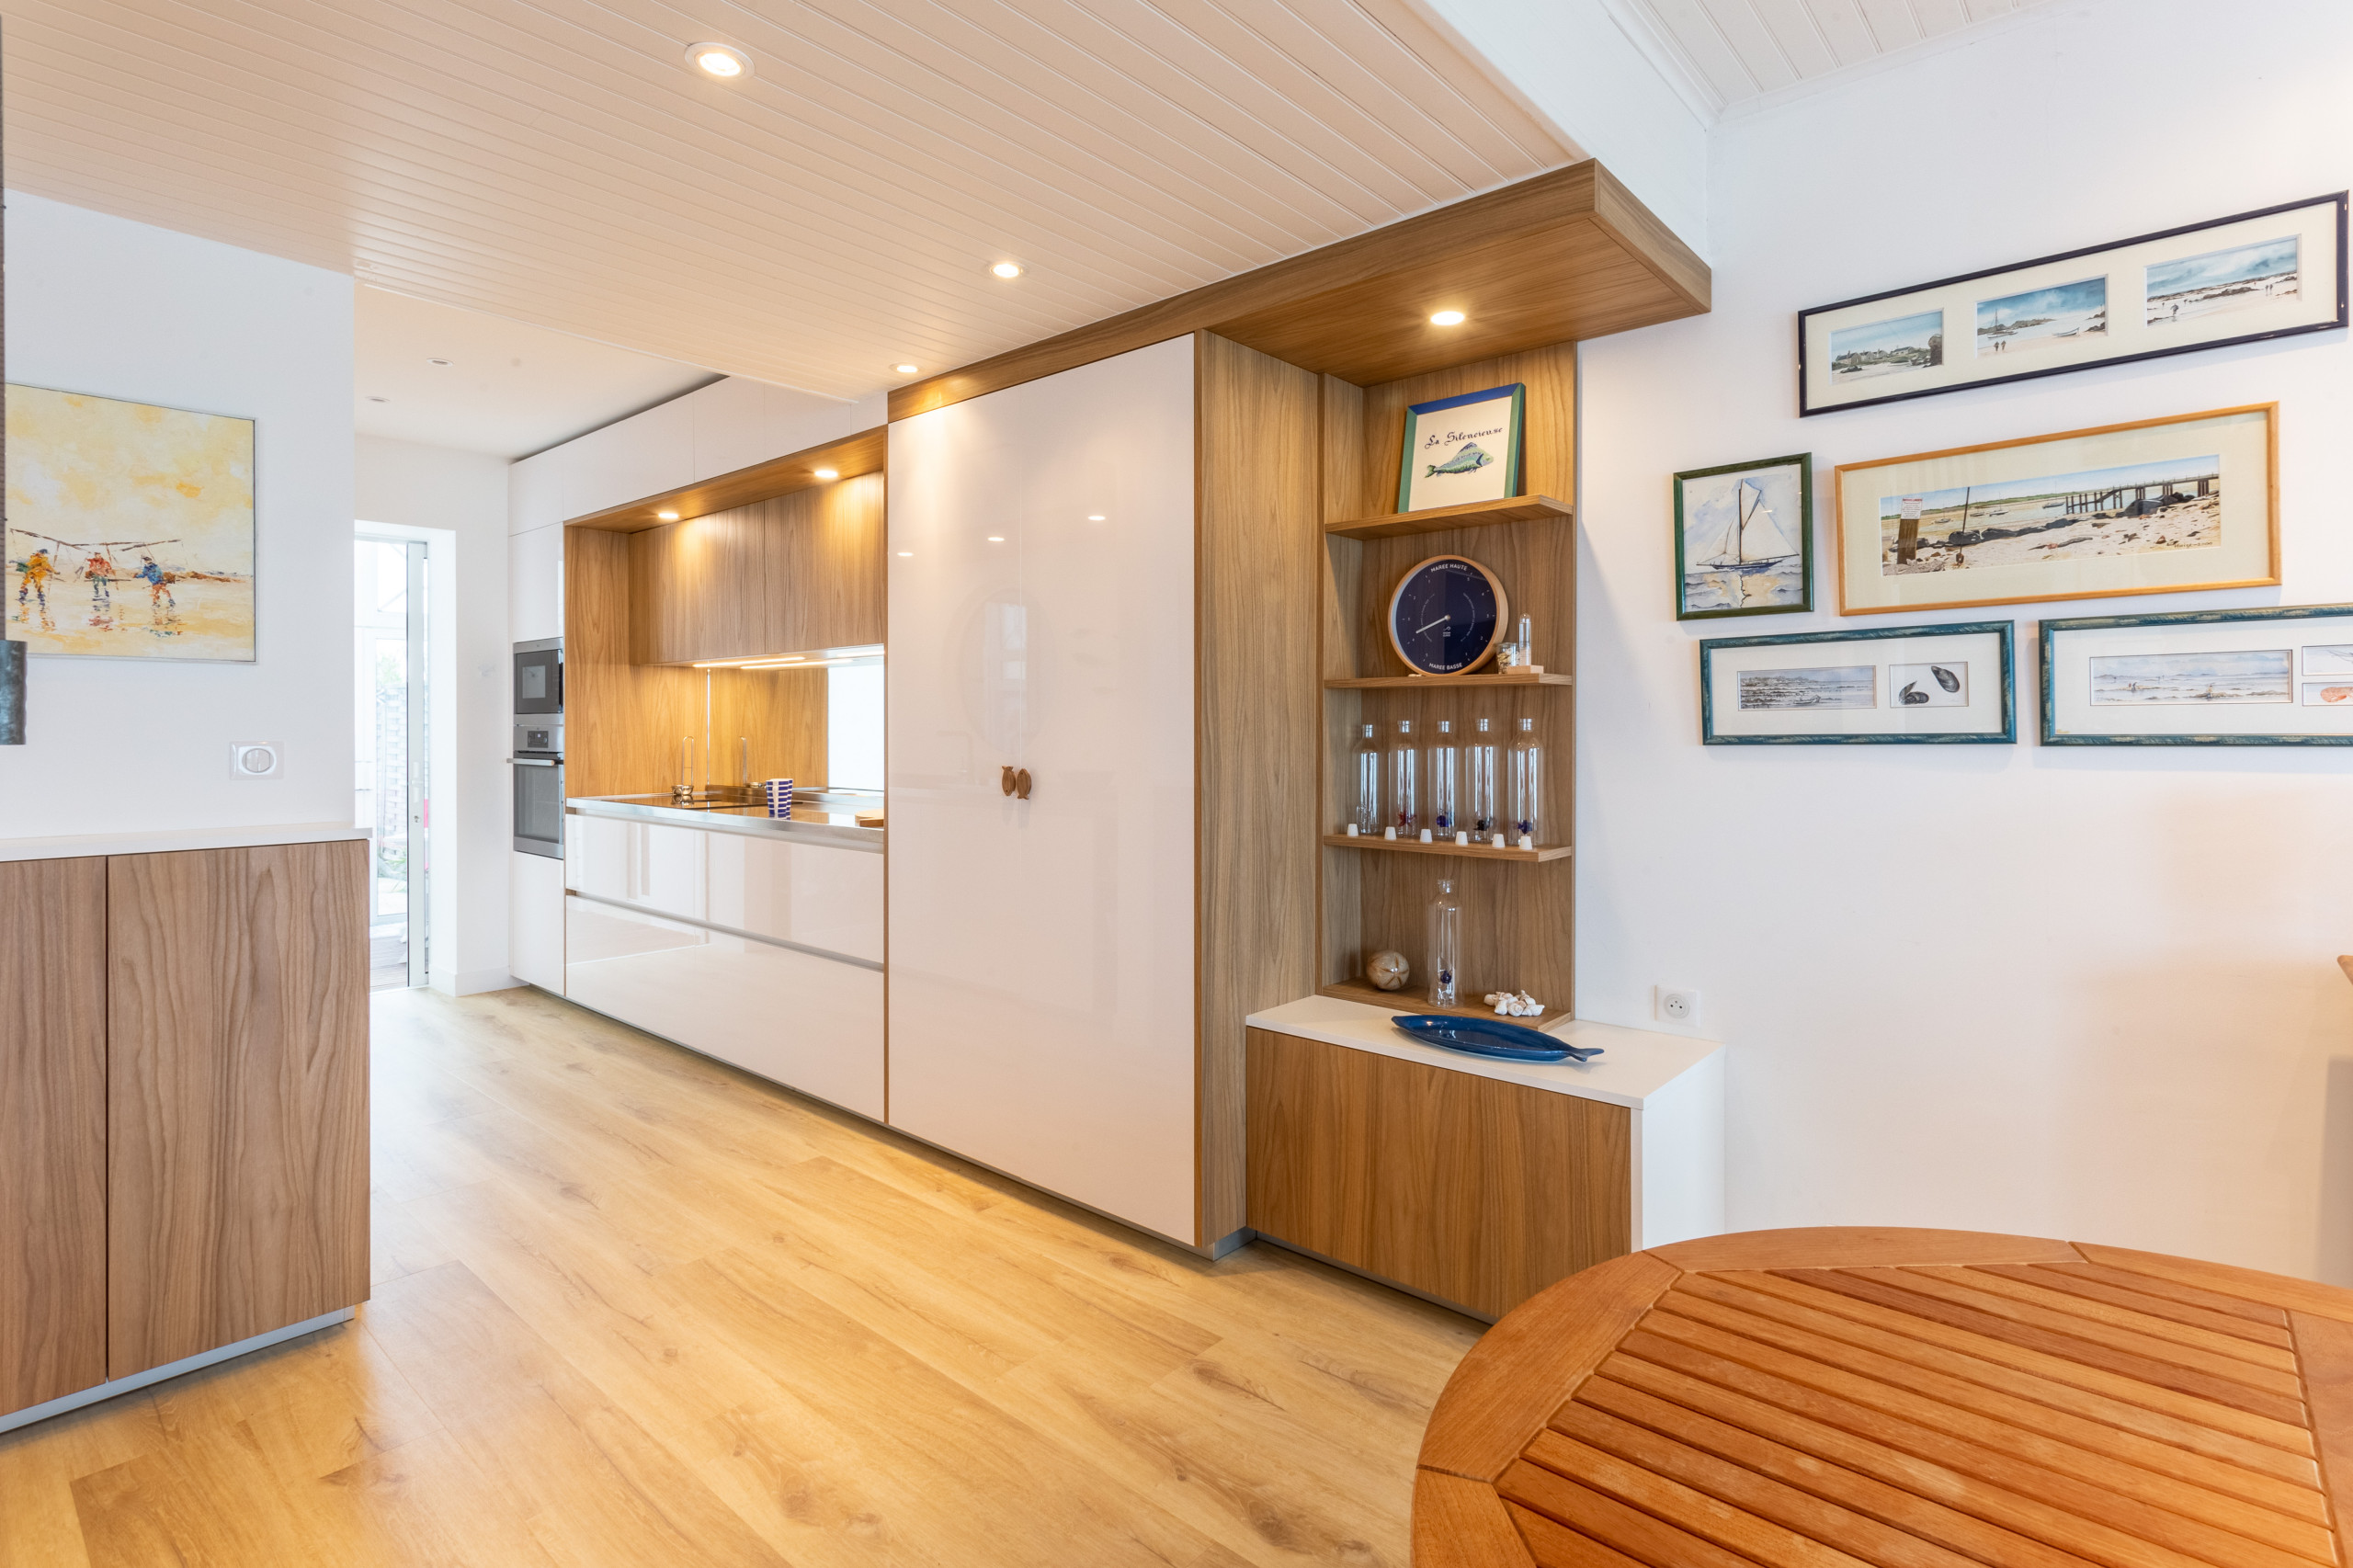 Aménagement d'une cuisine "couloir" dans une villa en bord de mer